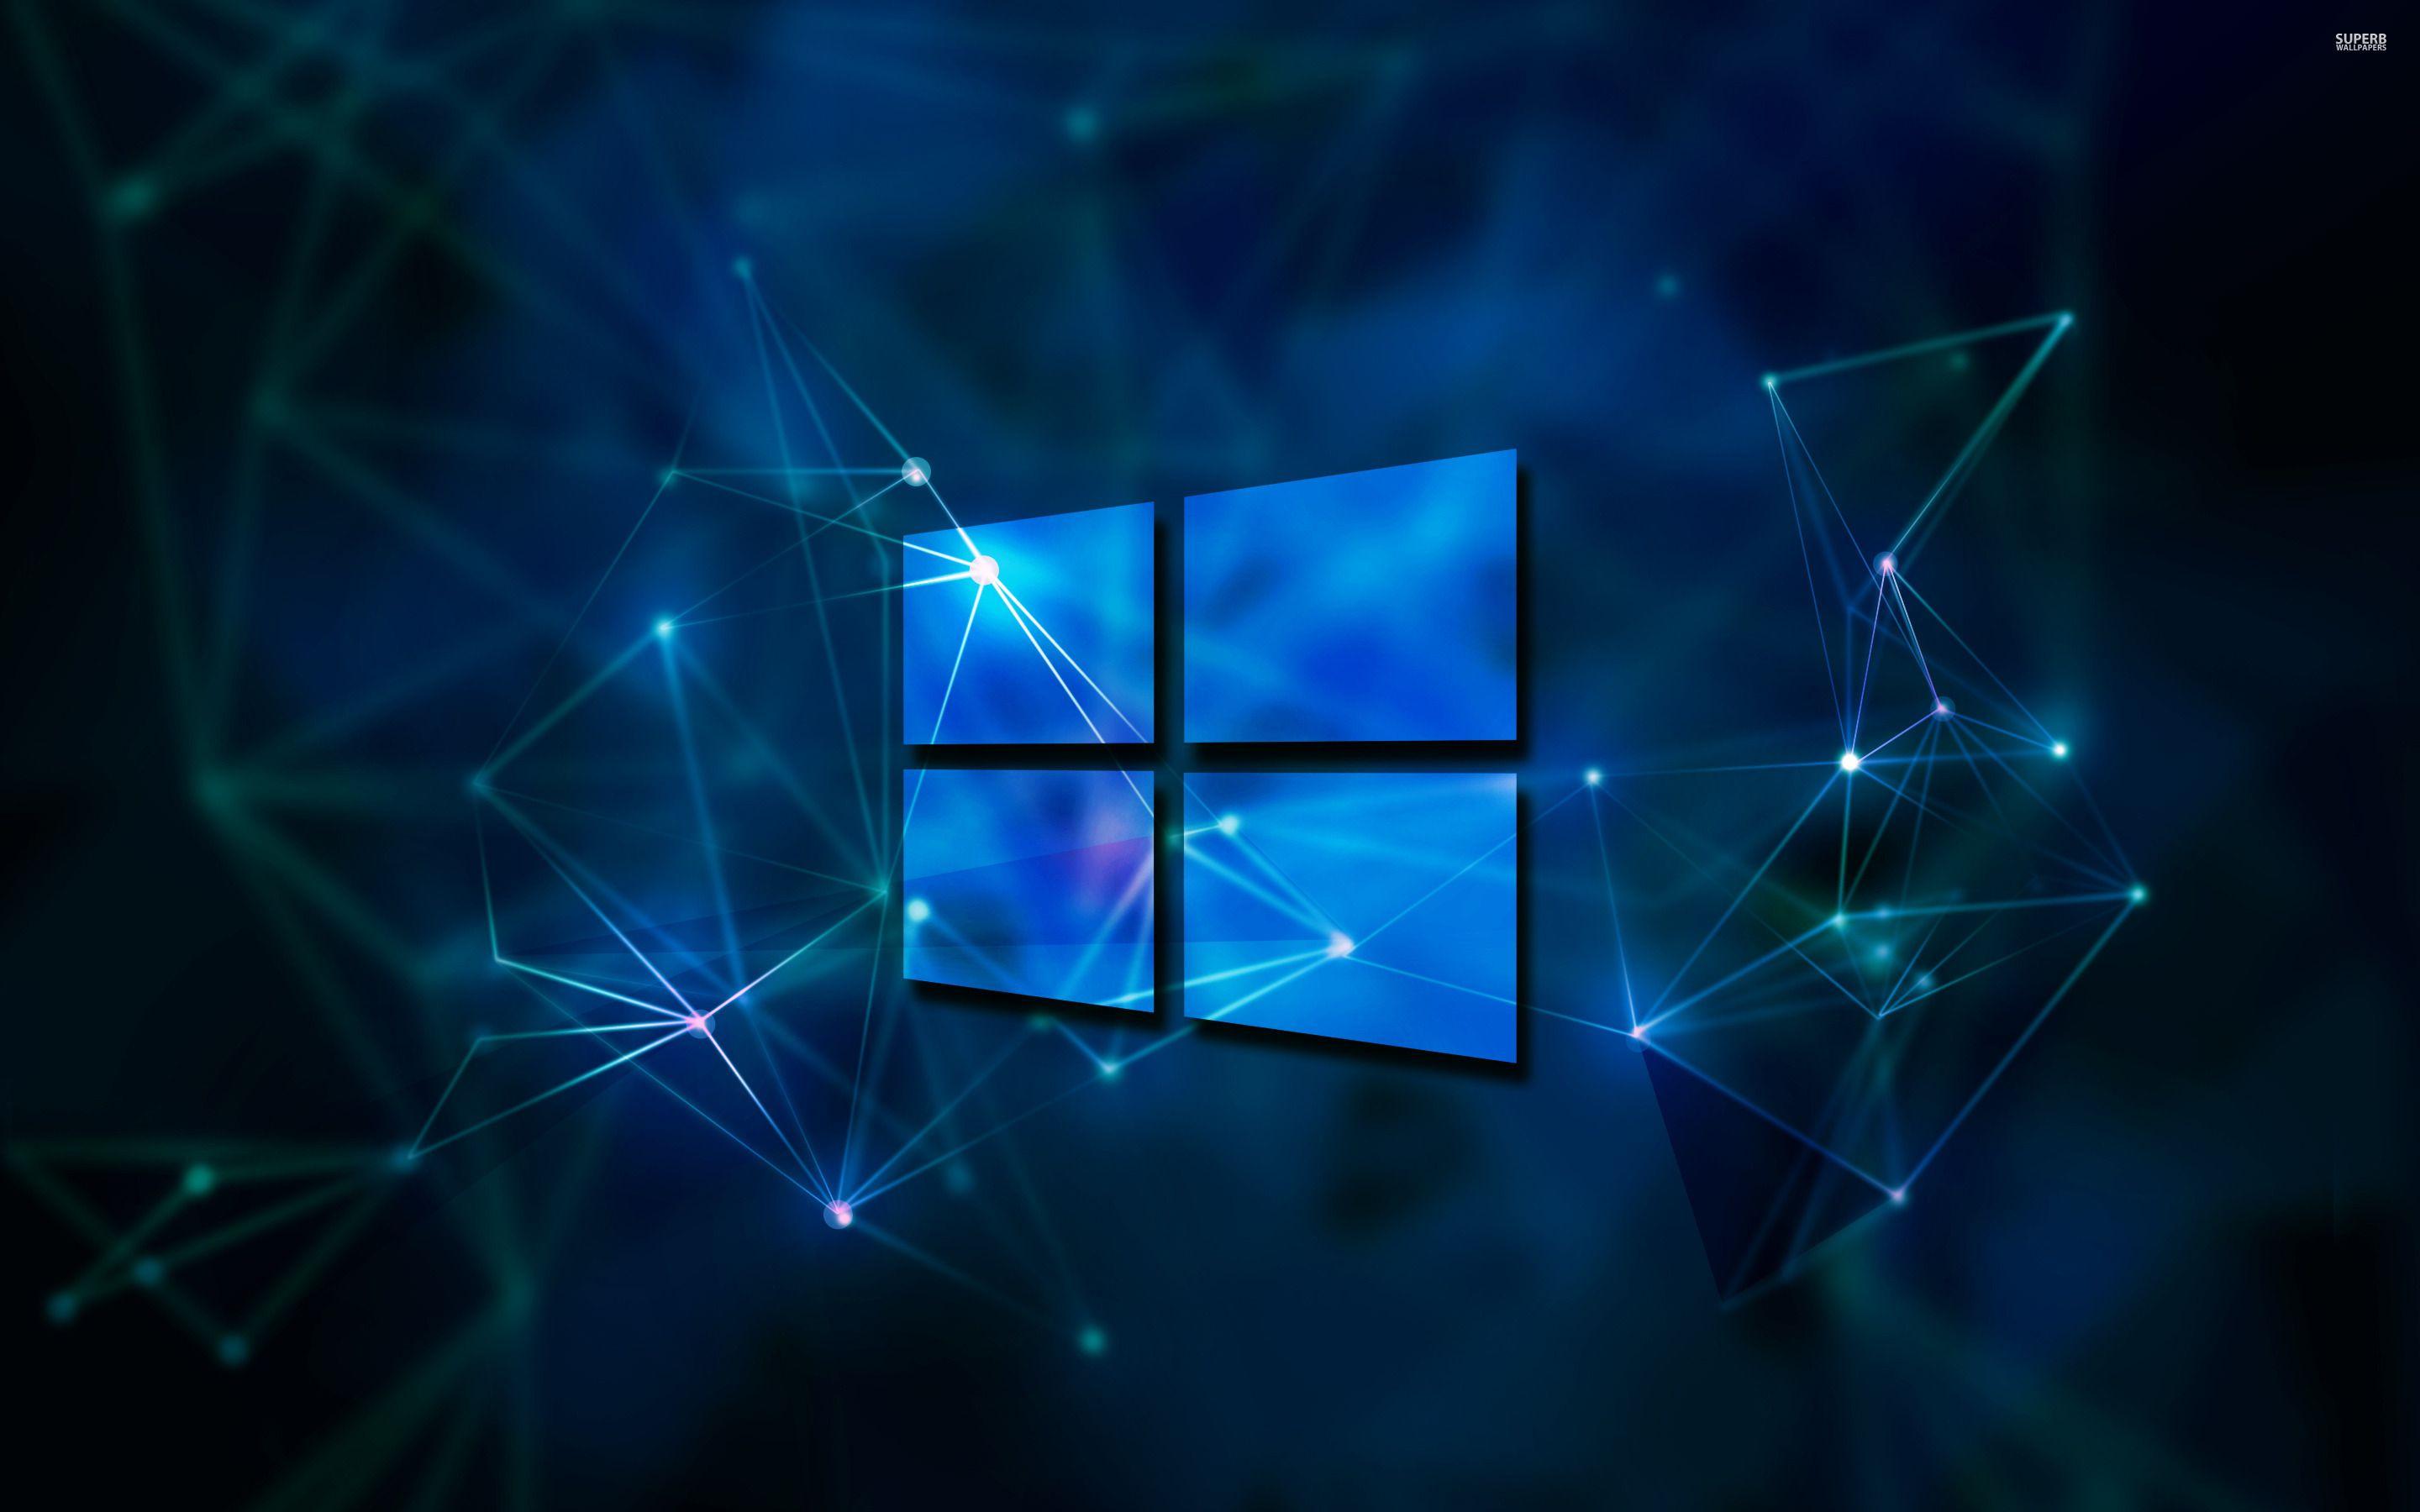 Download Gambar Wallpaper Hd Laptop Windows 10 terbaru 2020